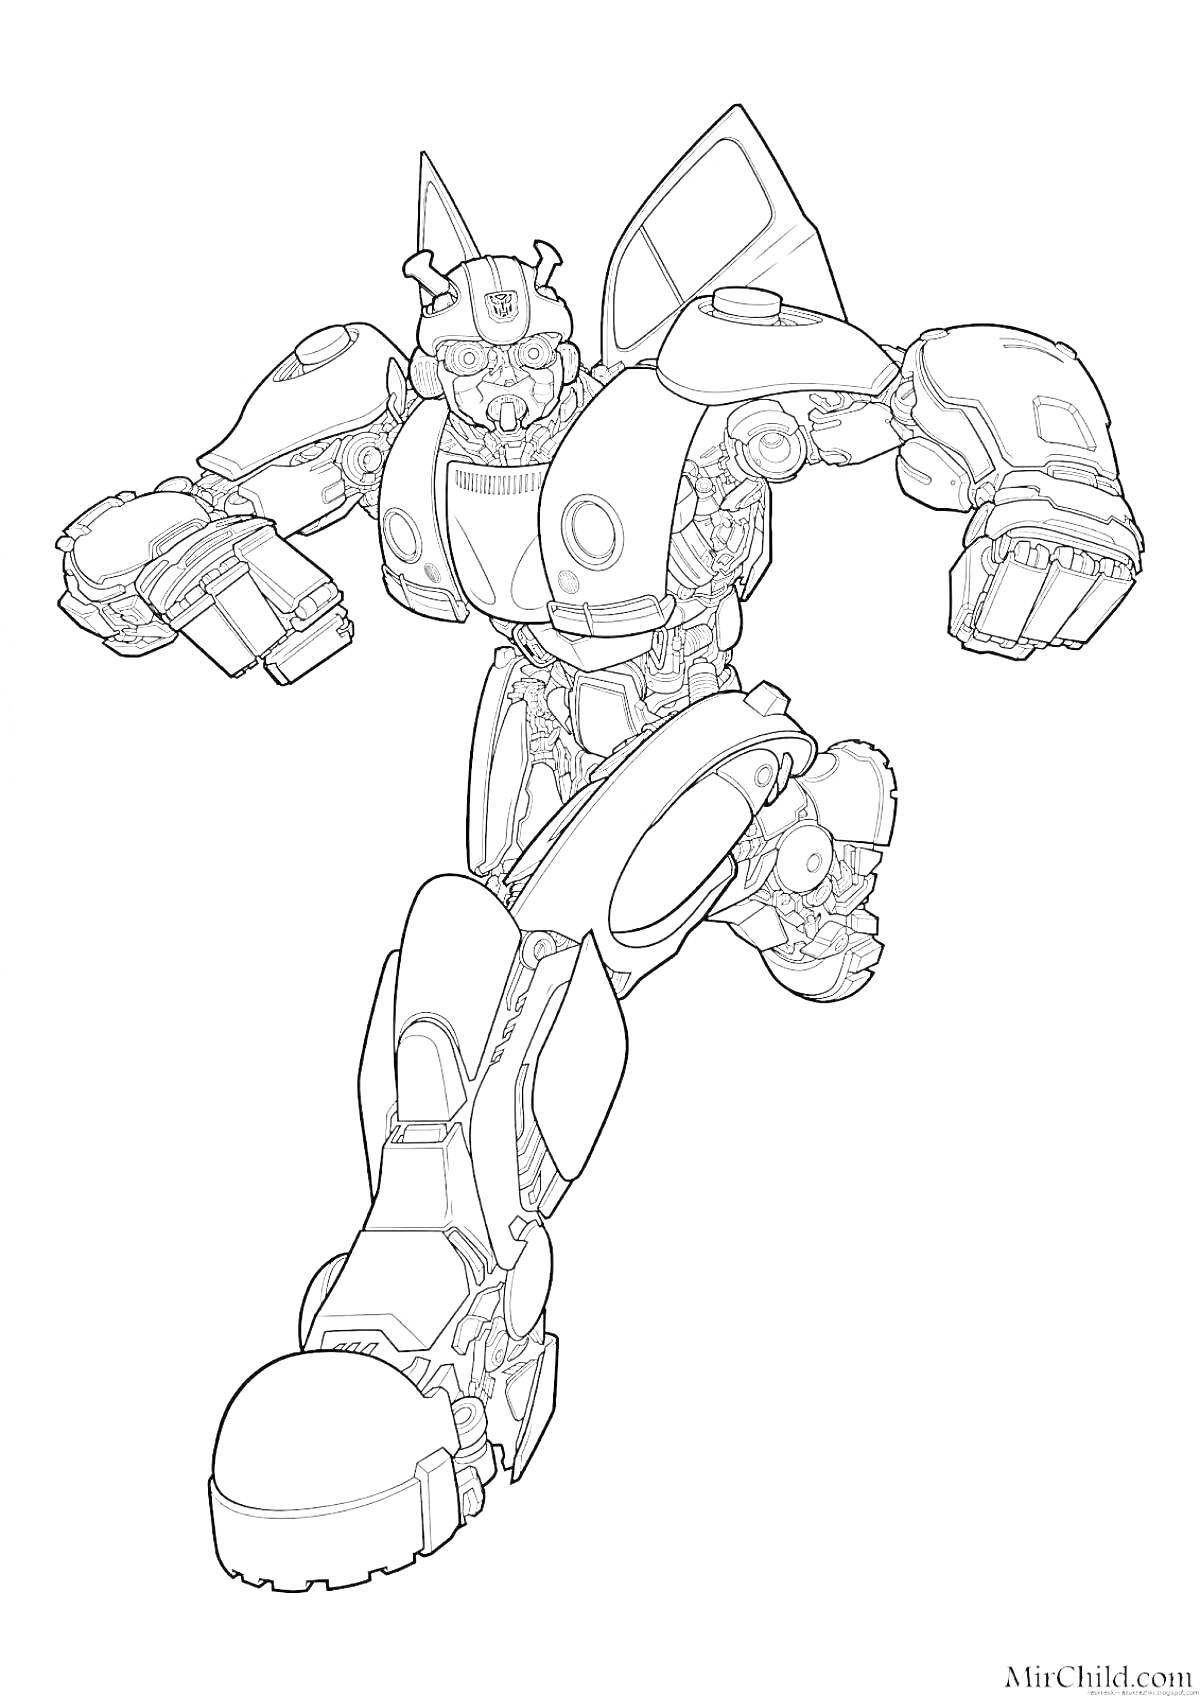 Раскраска Робот в прыжке с поднятой рукой и согнутой ногой